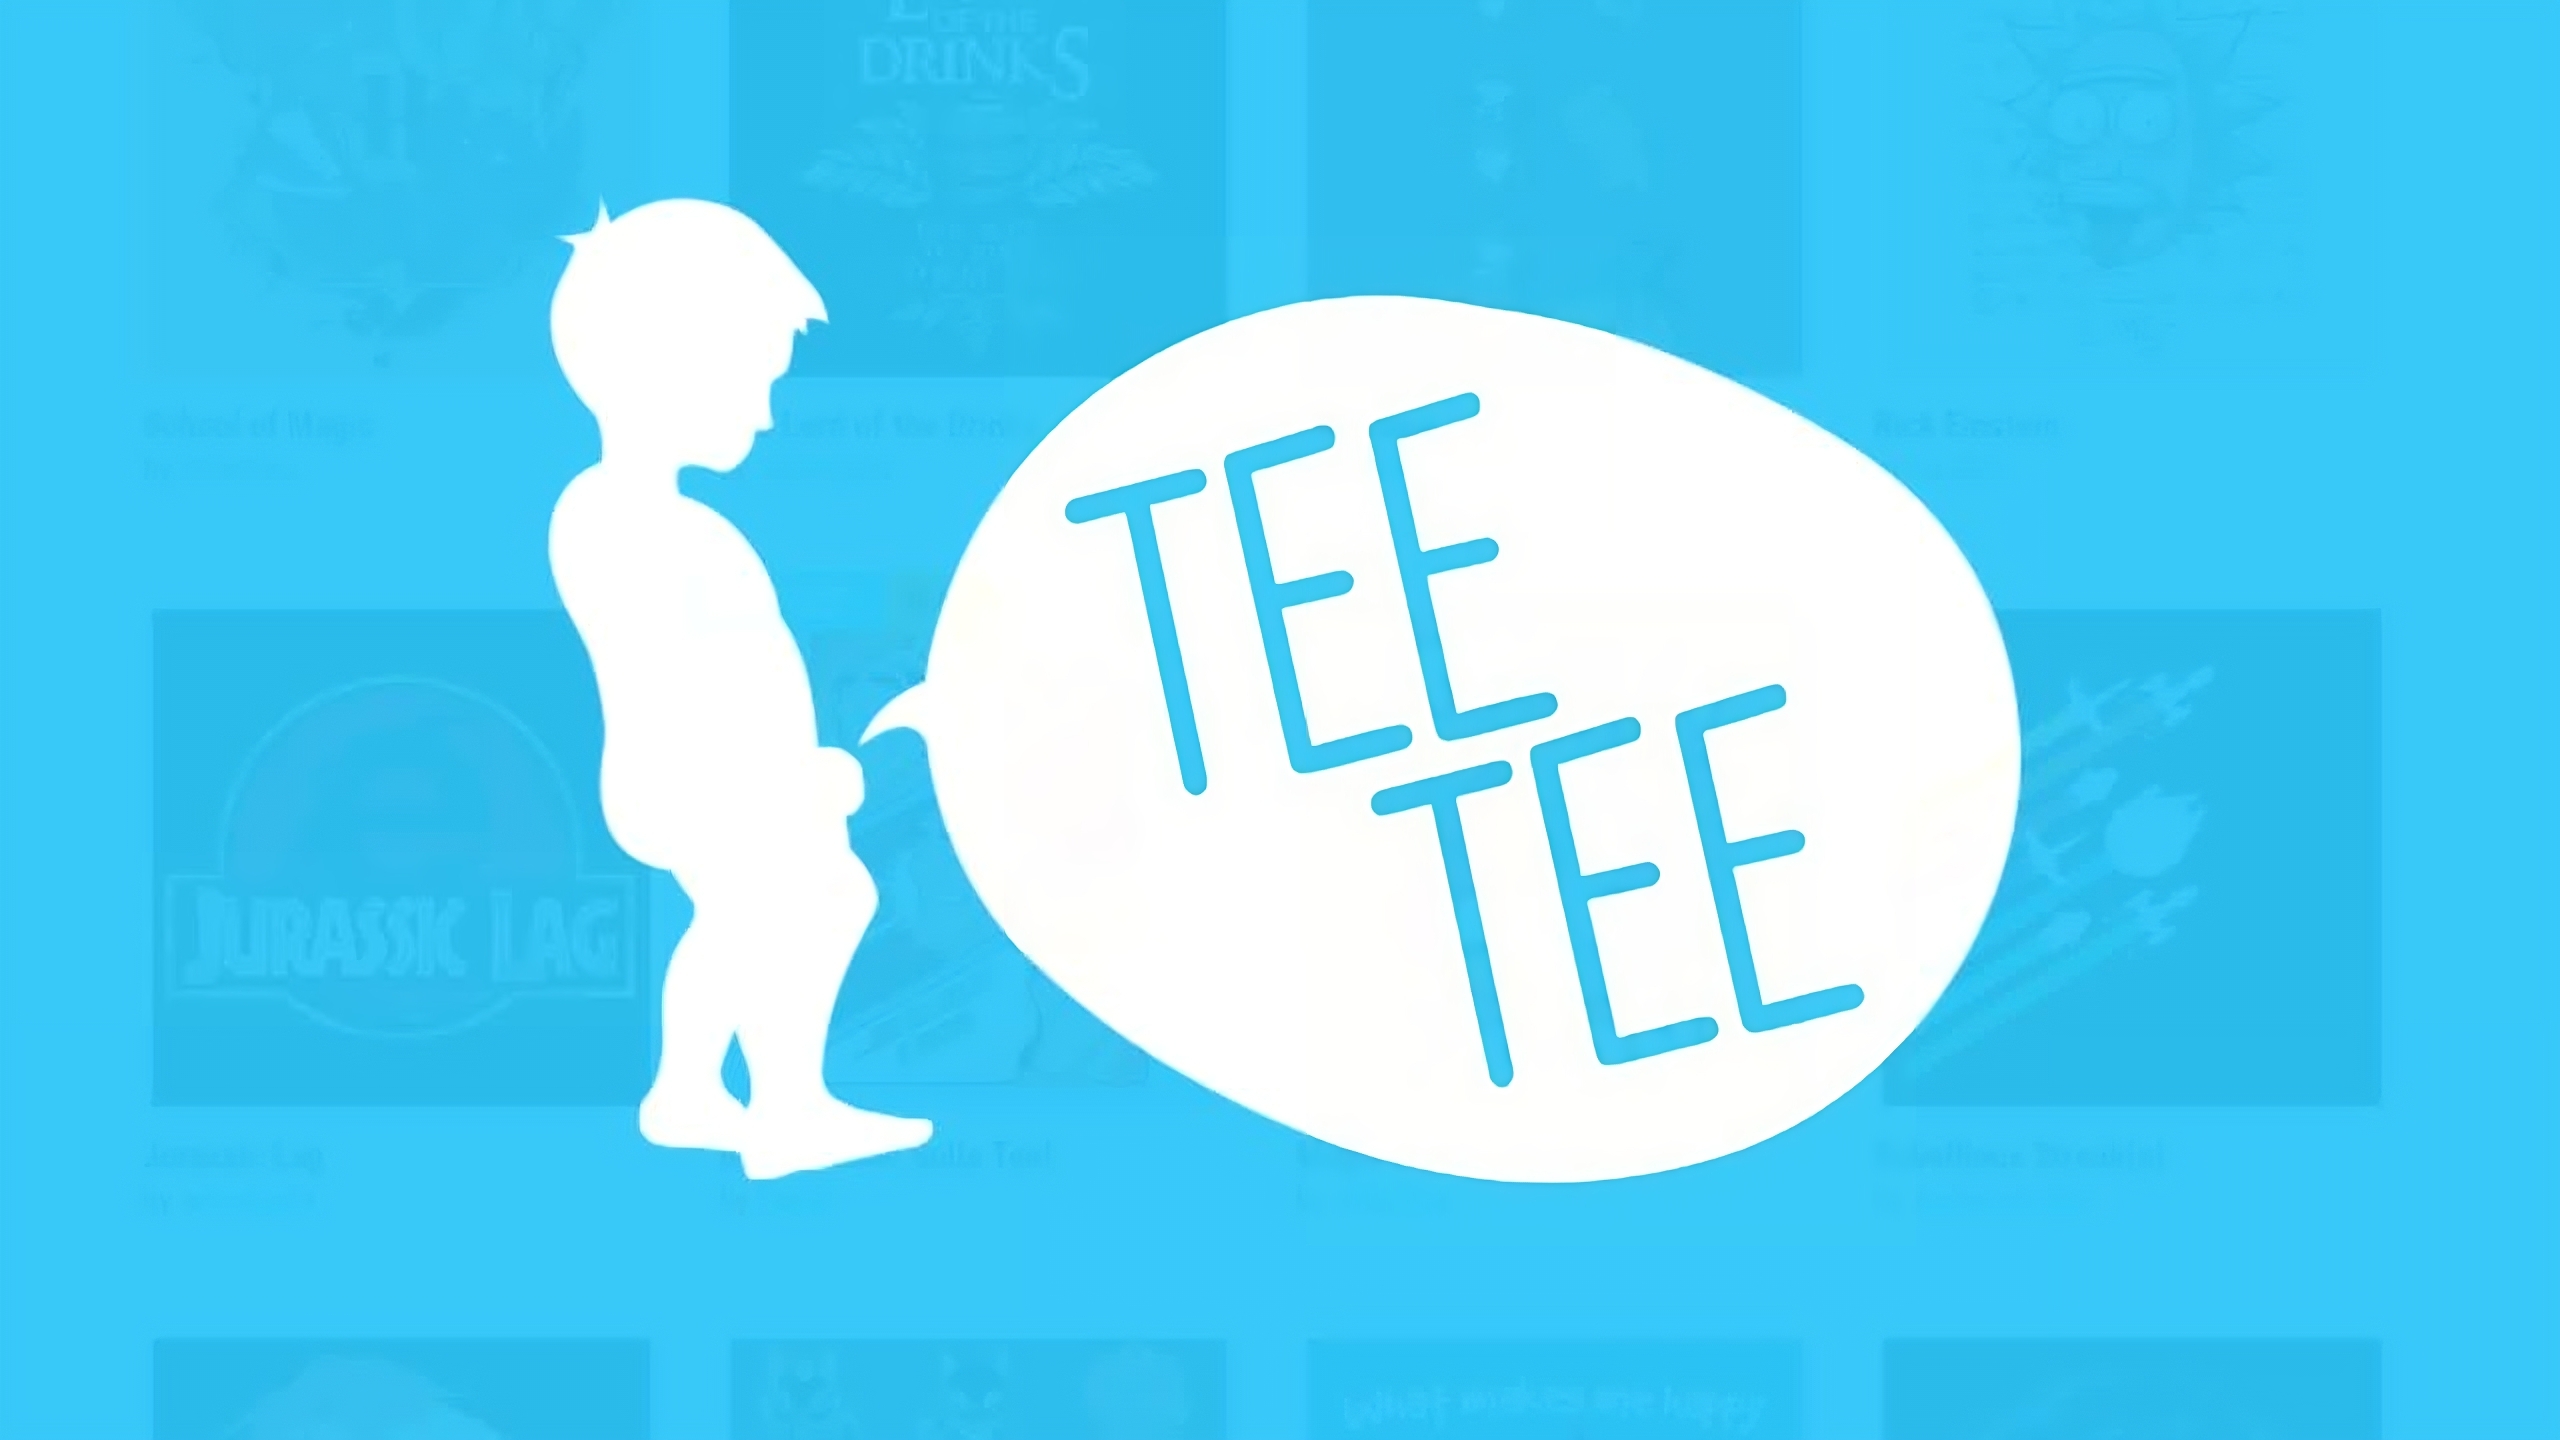 Tee Tee: lo storico shop di magliette chiude e dice "Goodbye", ma con delle sorprese finali